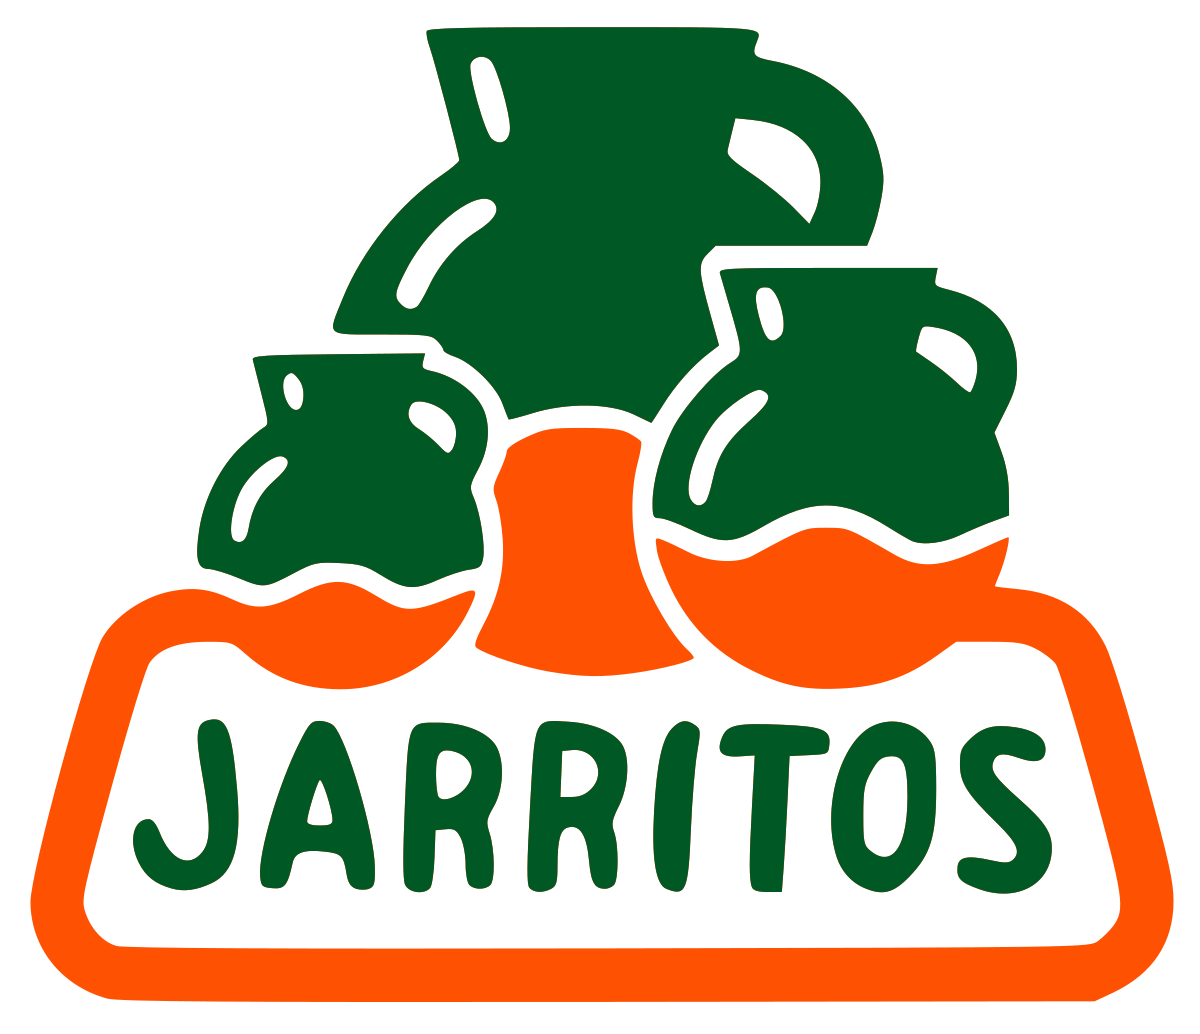 Jarritos (perfect pairing!)